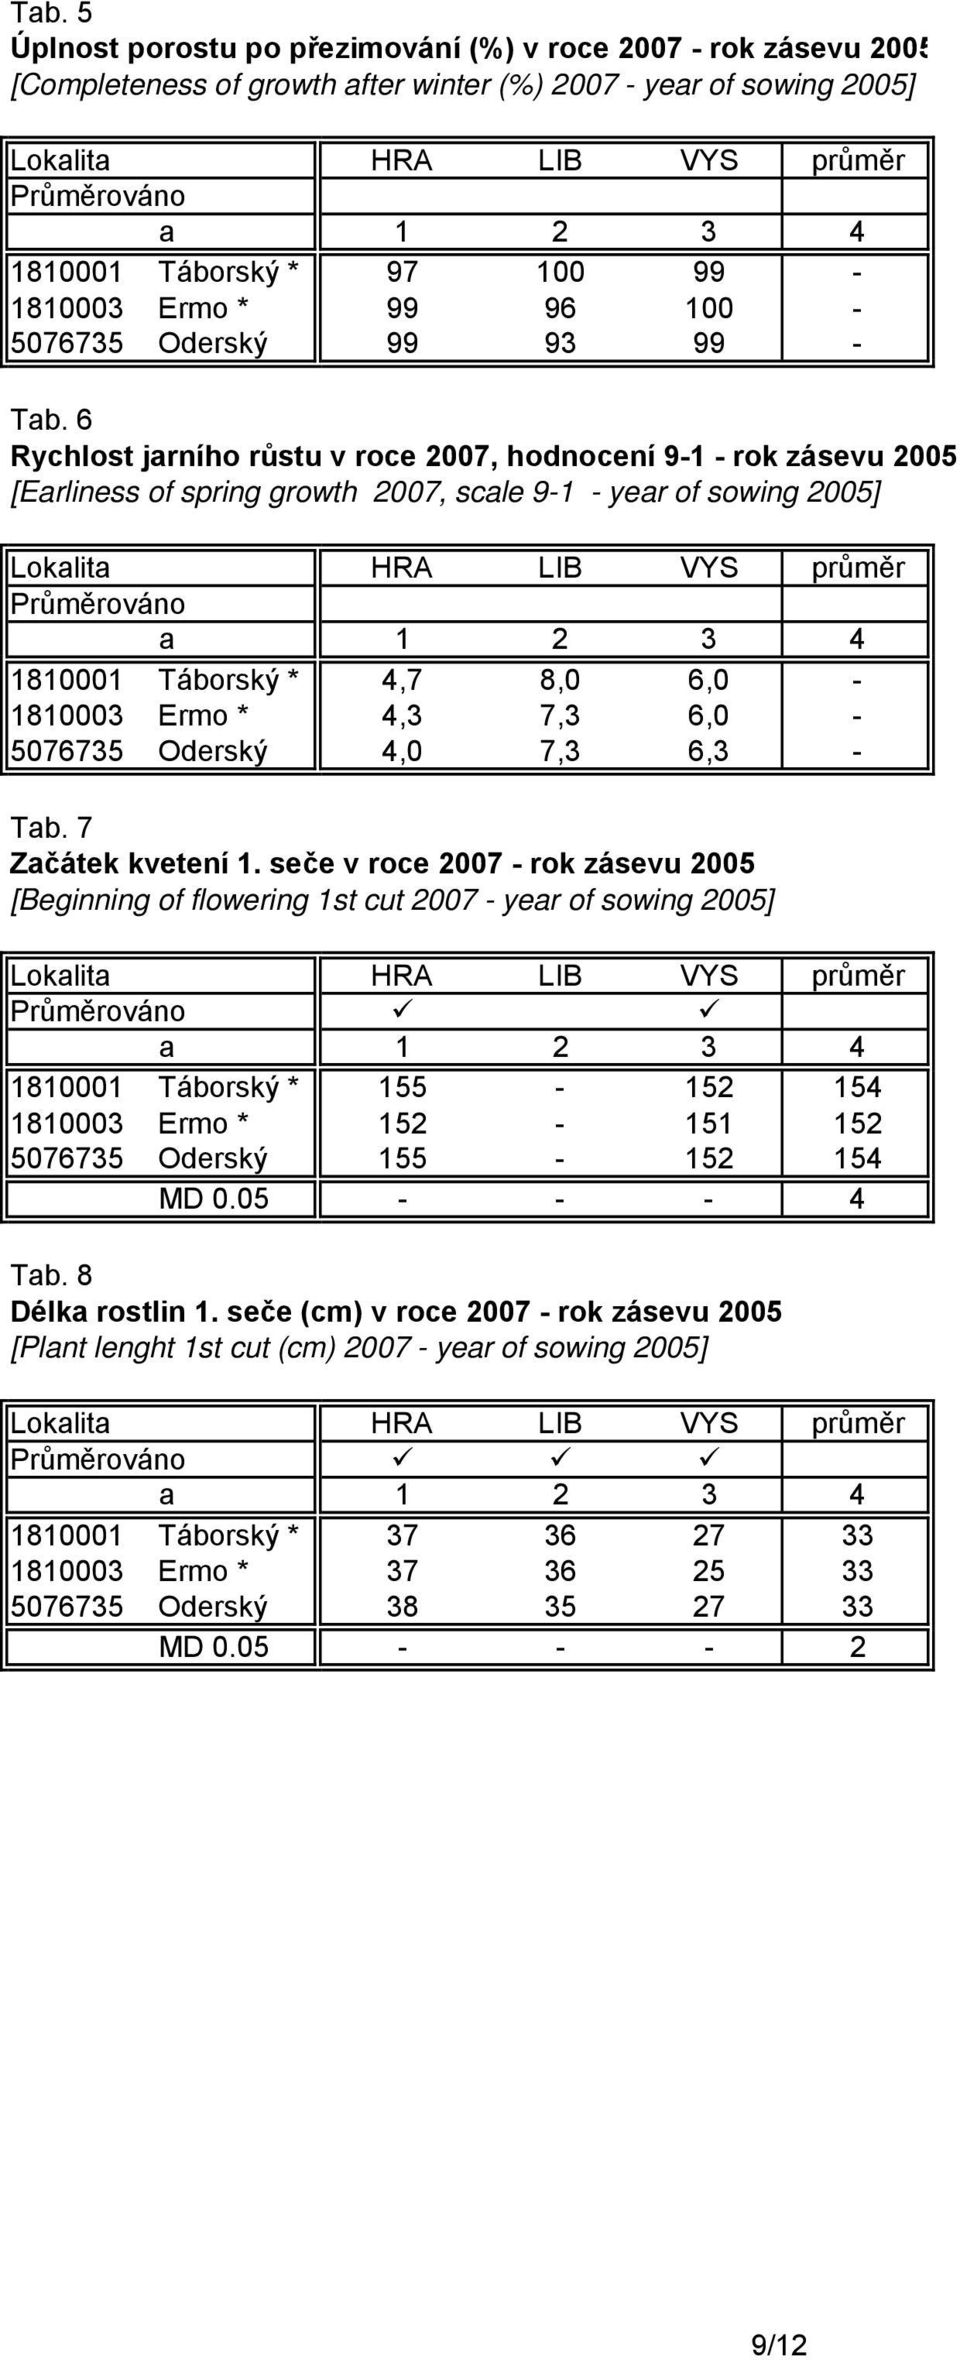 6 Rychlost jarního růstu v roce 2007, hodnocení 9-1 - rok zásevu 2005 [Earliness of spring growth 2007, scale 9-1 - year of sowing 2005] 1810001 Táborský * 4,7 8,0 6,0-1810003 Ermo * 4,3 7,3